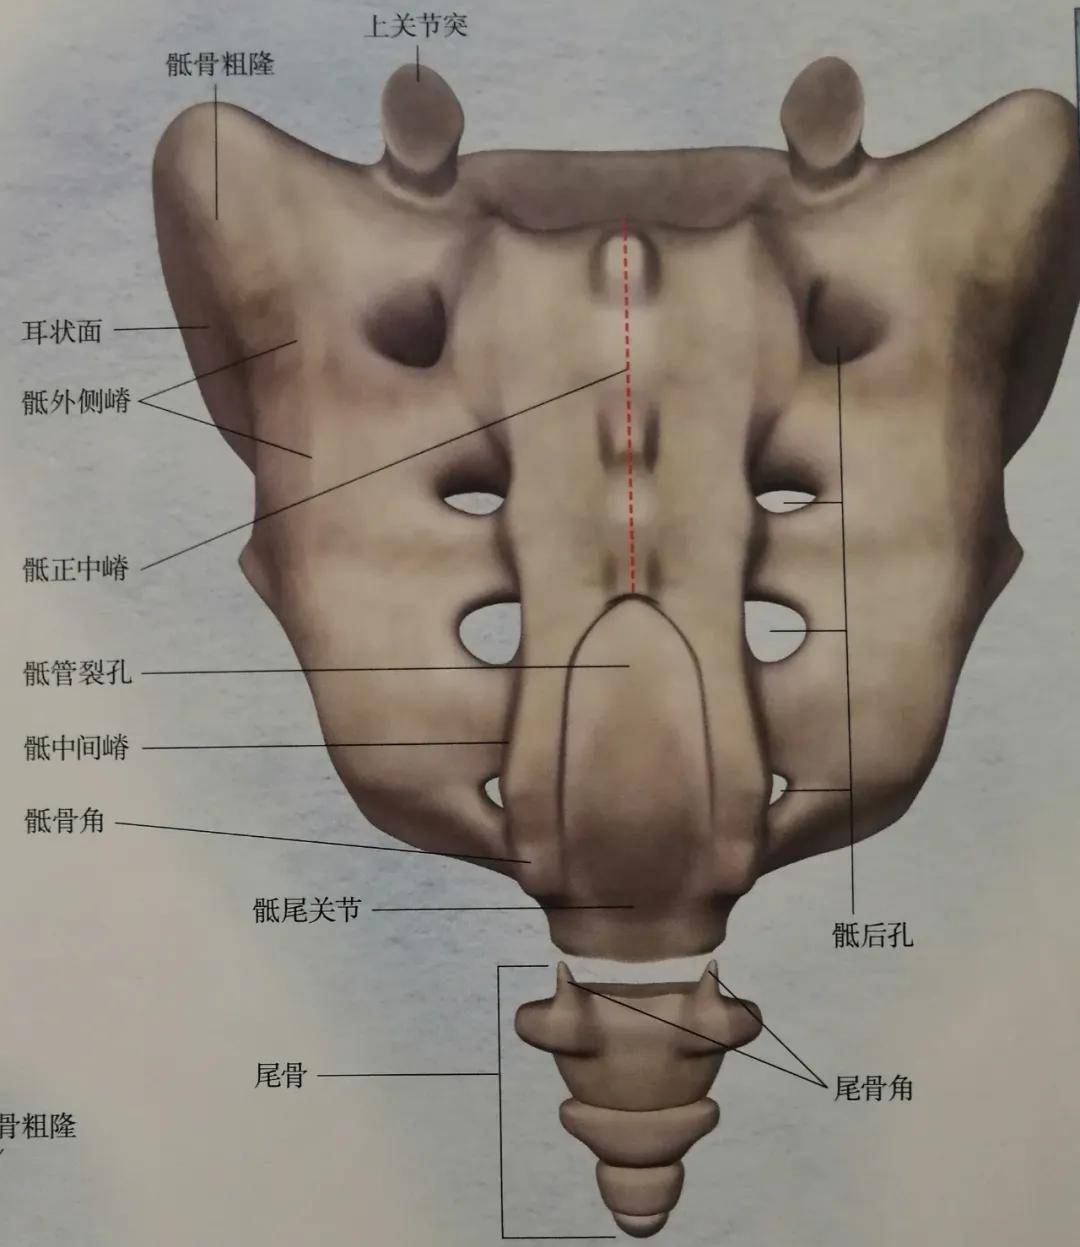 图片来源:《骨盆解剖及功能训练图解》 在脊柱的最下方就是骶椎和尾